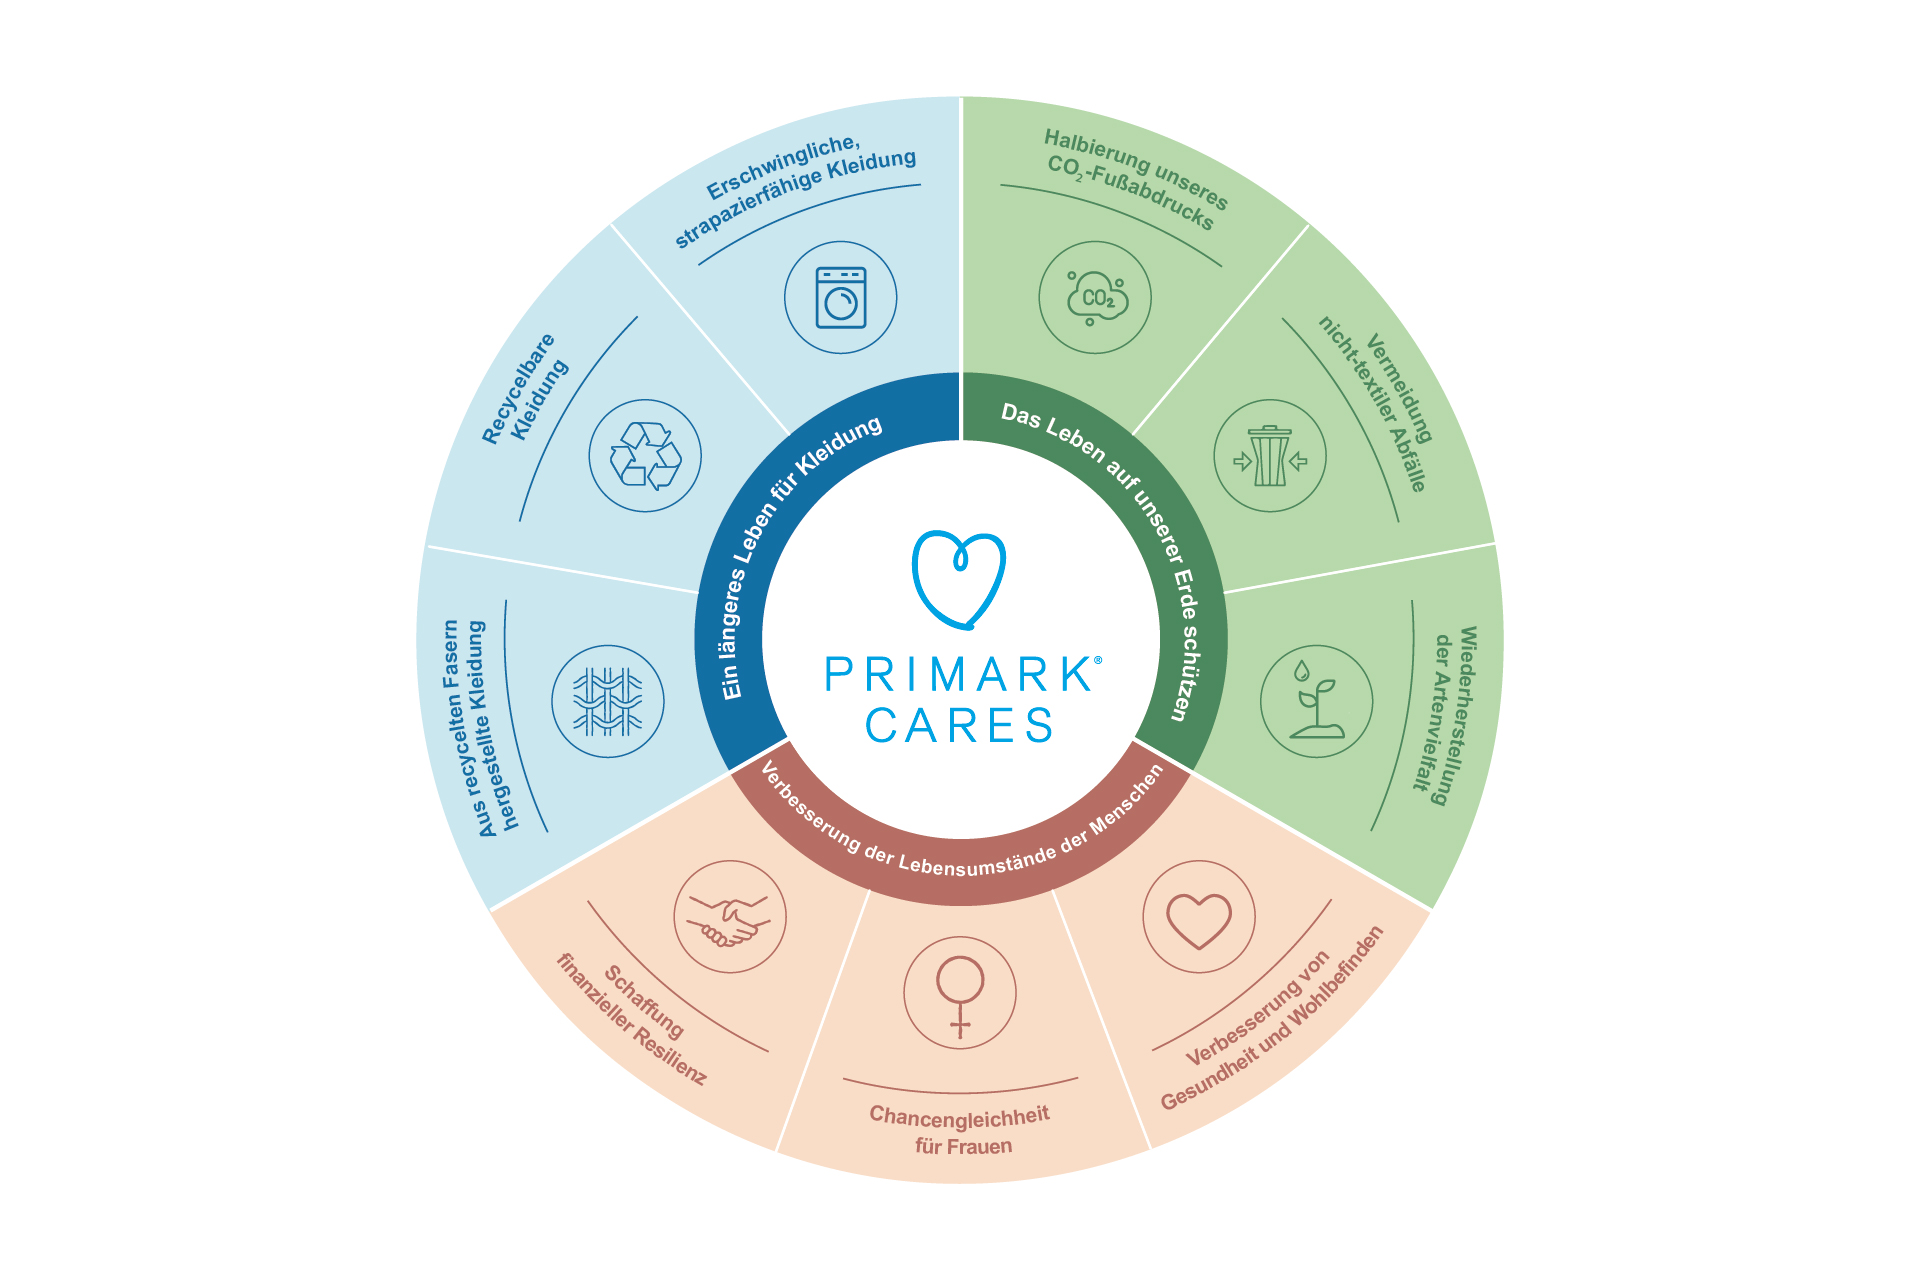 Unsere Primark Cares-Strategie umfasst neun Ziele, die uns helfen werden, ein nachhaltigeres, kreislauforientierteres Unternehmen zu werden.